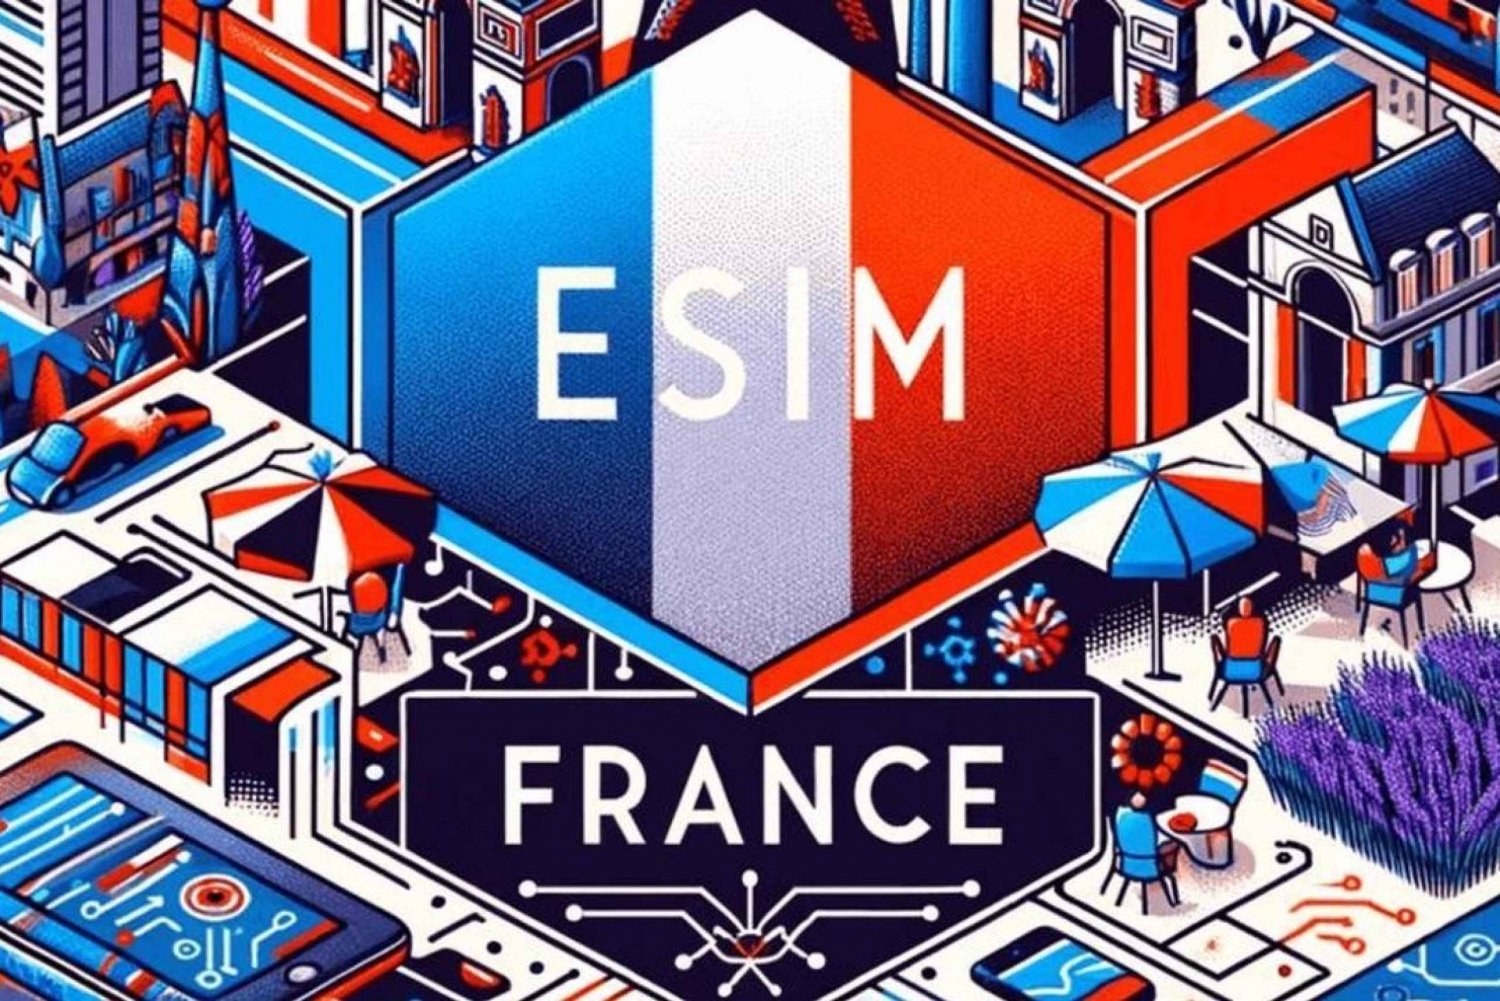 France eSIM Unlimited Data